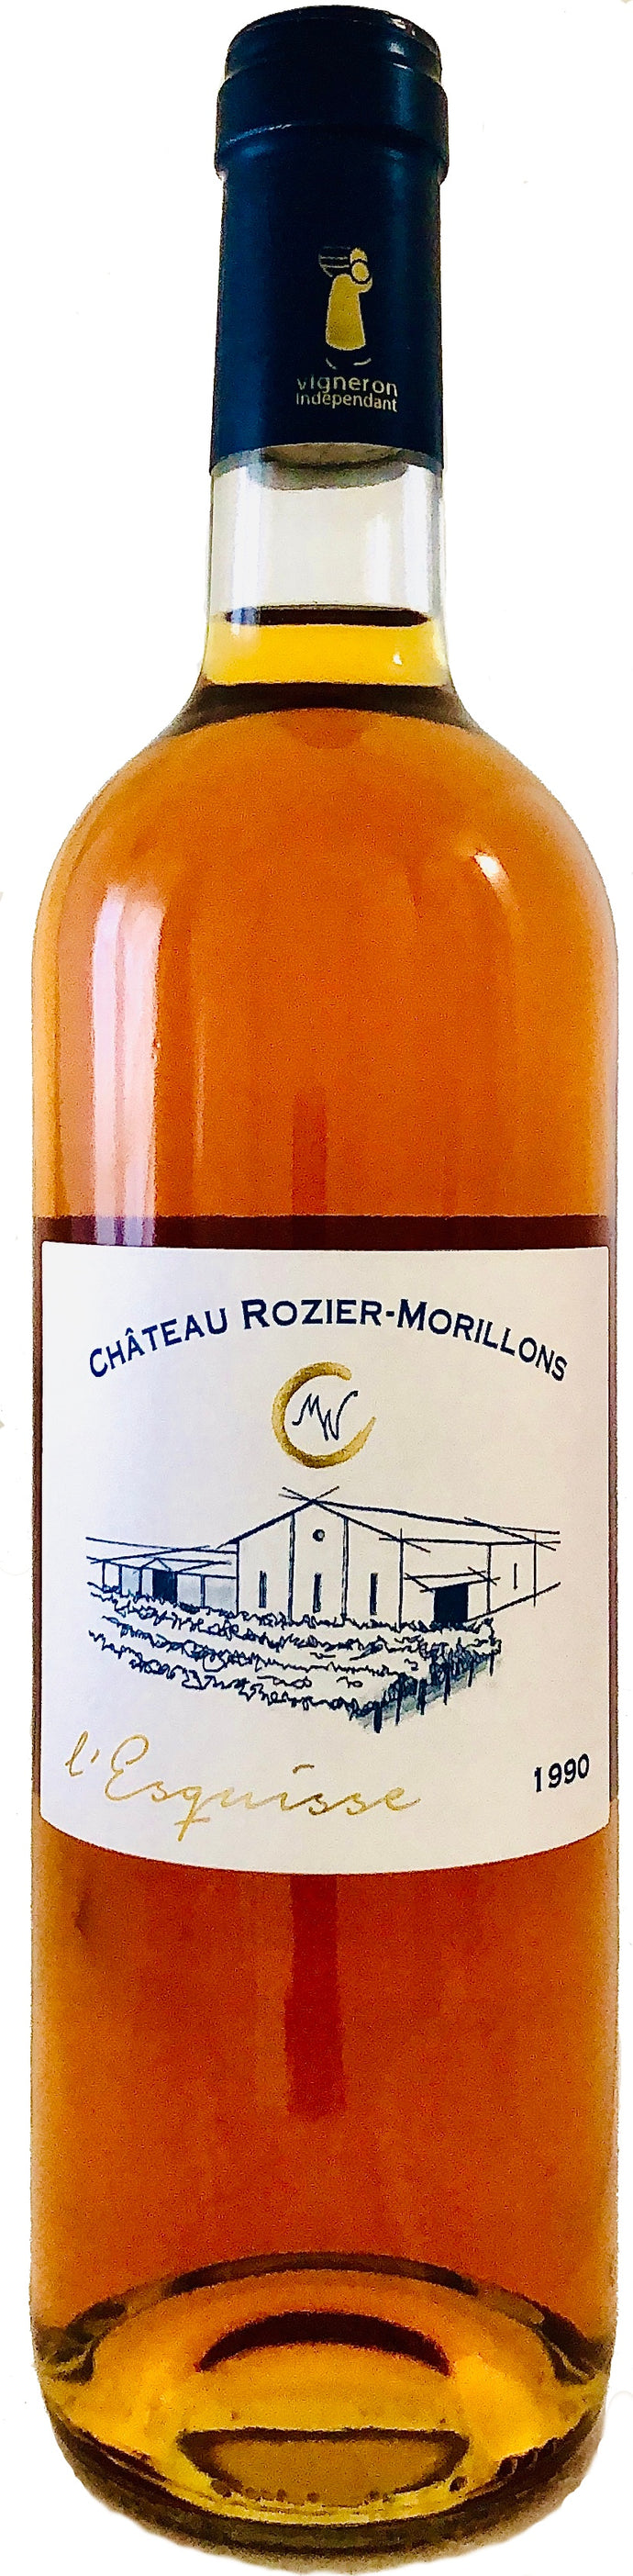 Château ROZIER-MORILLONS AOC PREMIÈRES CÔTES DE BORDEAUX – cuvée L’esquisse - 1990 – 75 cL – Agriculture Raisonnée